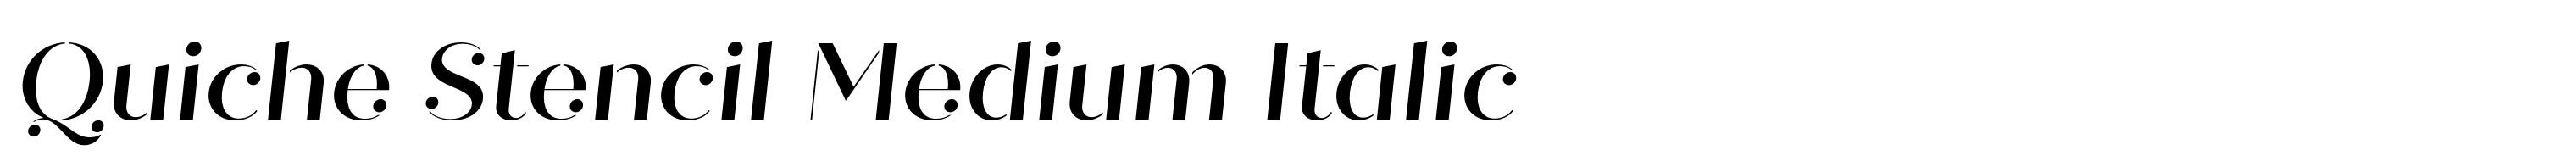 Quiche Stencil Medium Italic